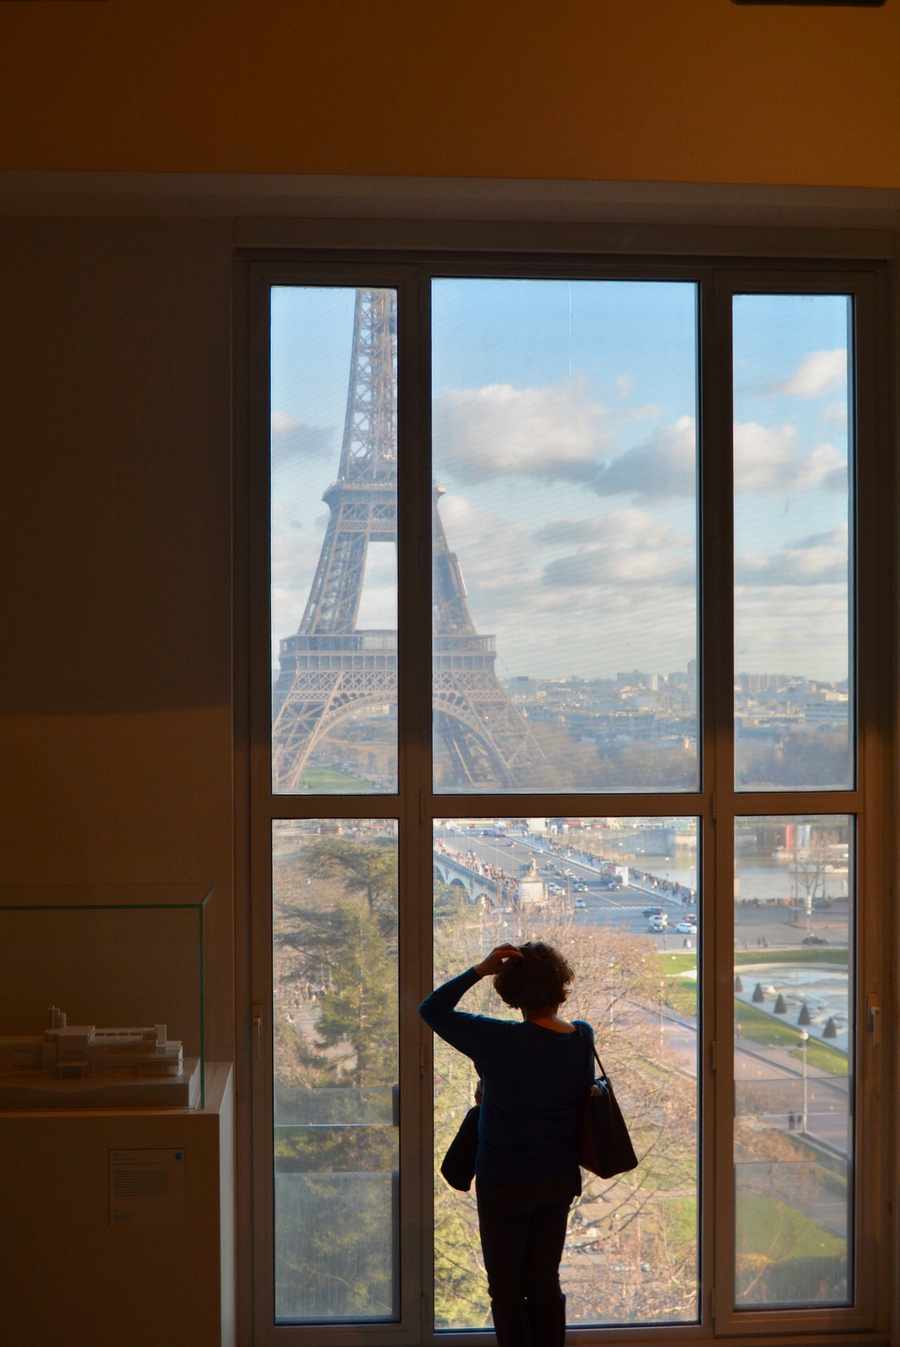 cite architecture patrimoine Paris, view, eiffel tower